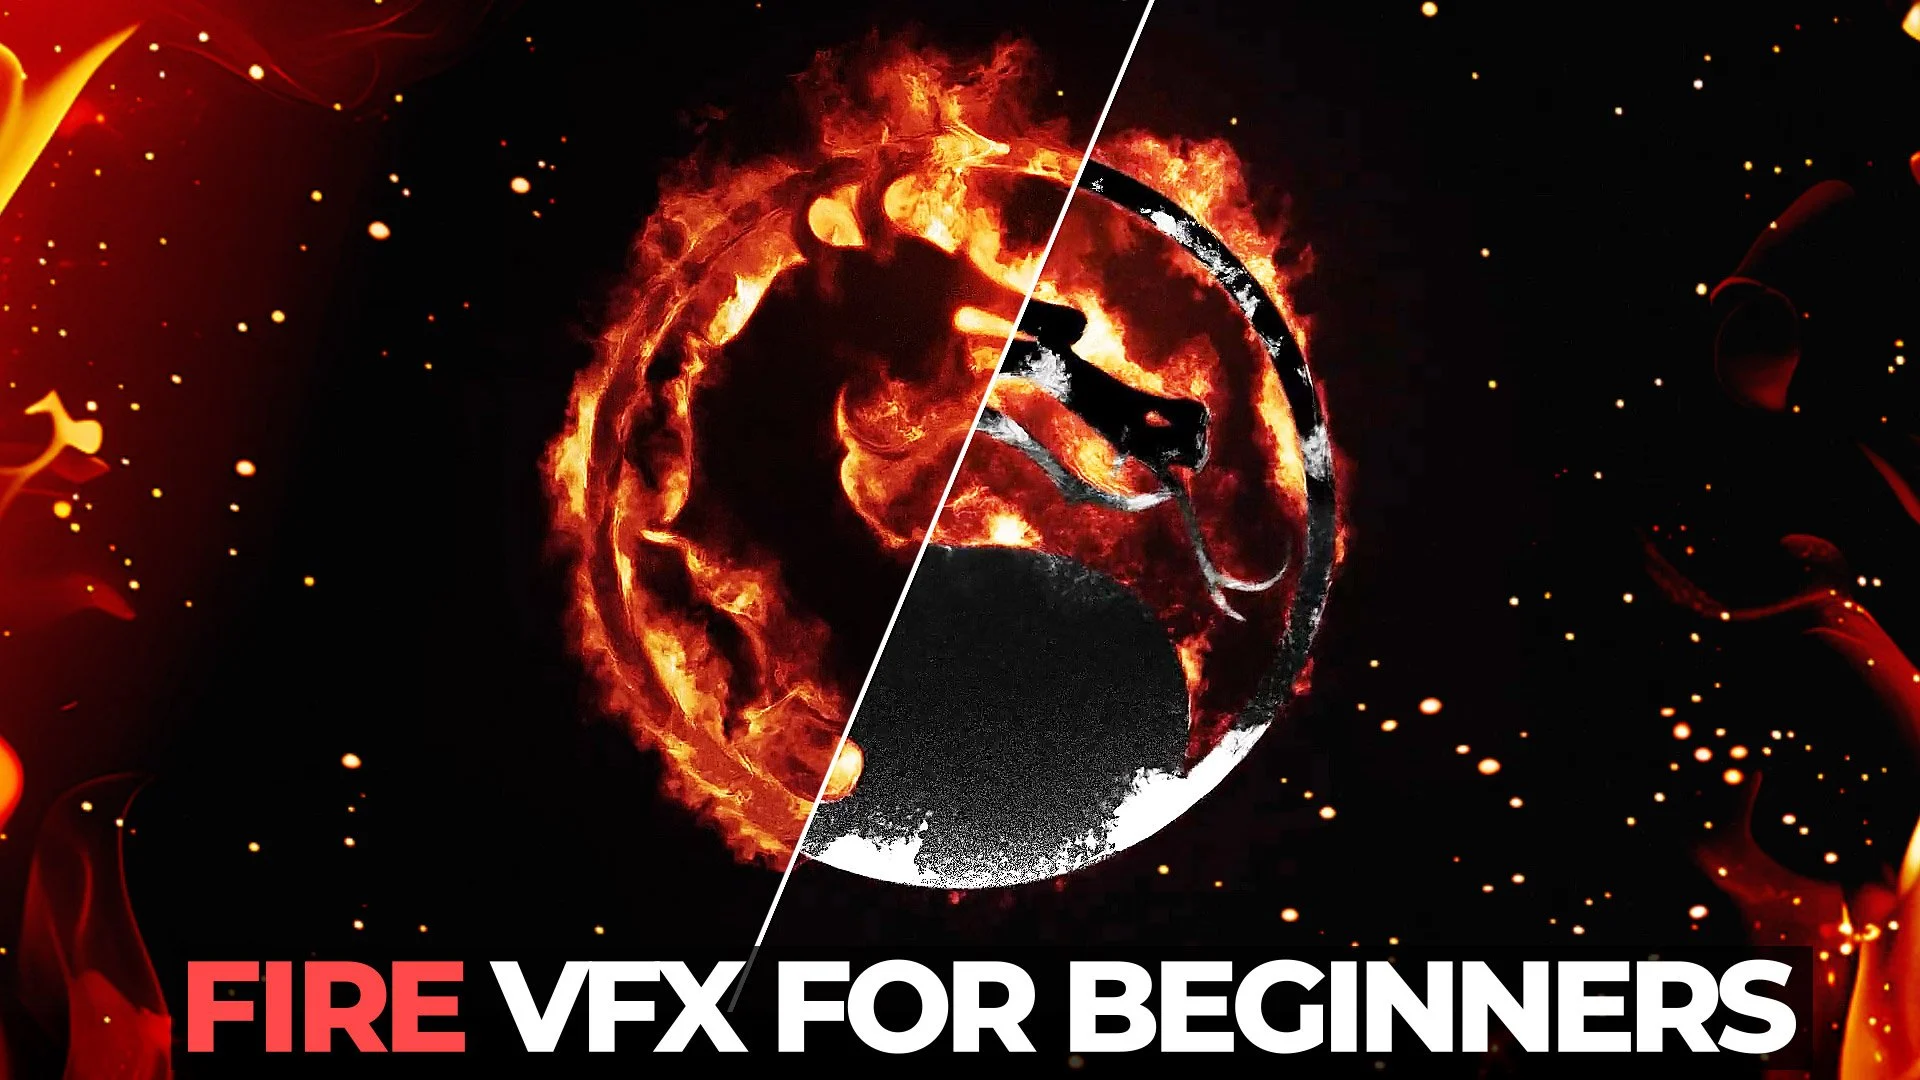 آموزش قالب پیشرفته Fire VFX - جلوه های ویژه برای مبتدیان با استفاده از Adobe After Effects